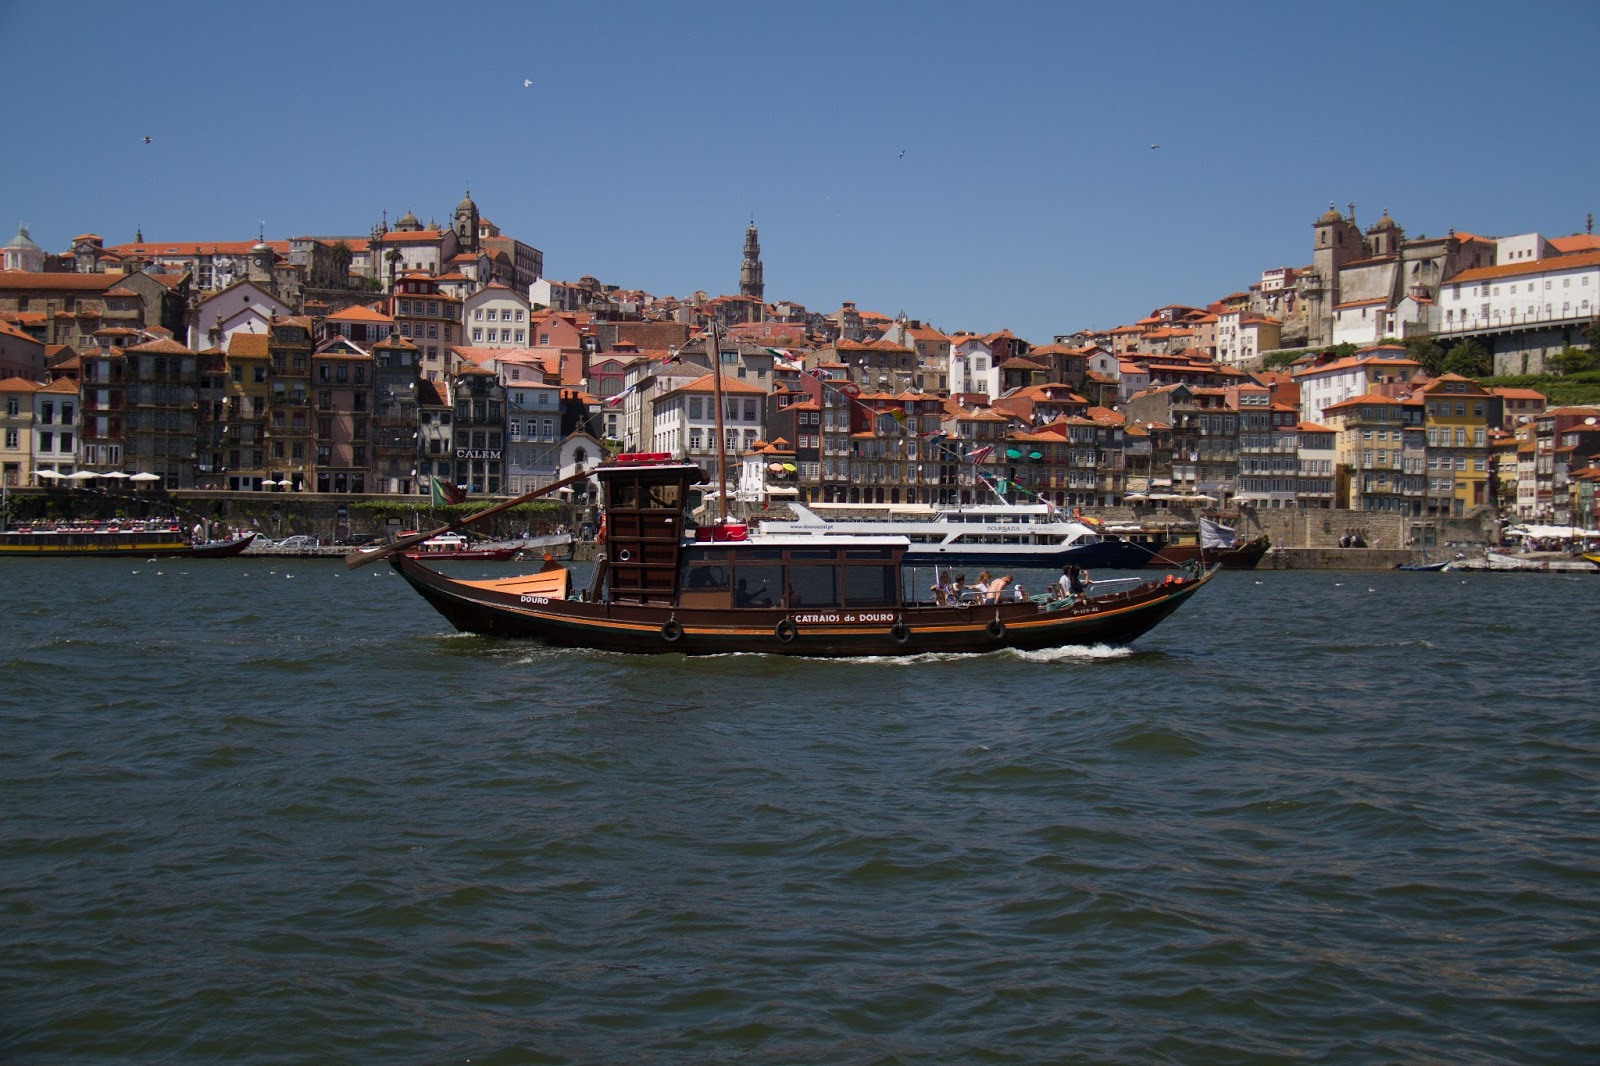 Manos do Douro